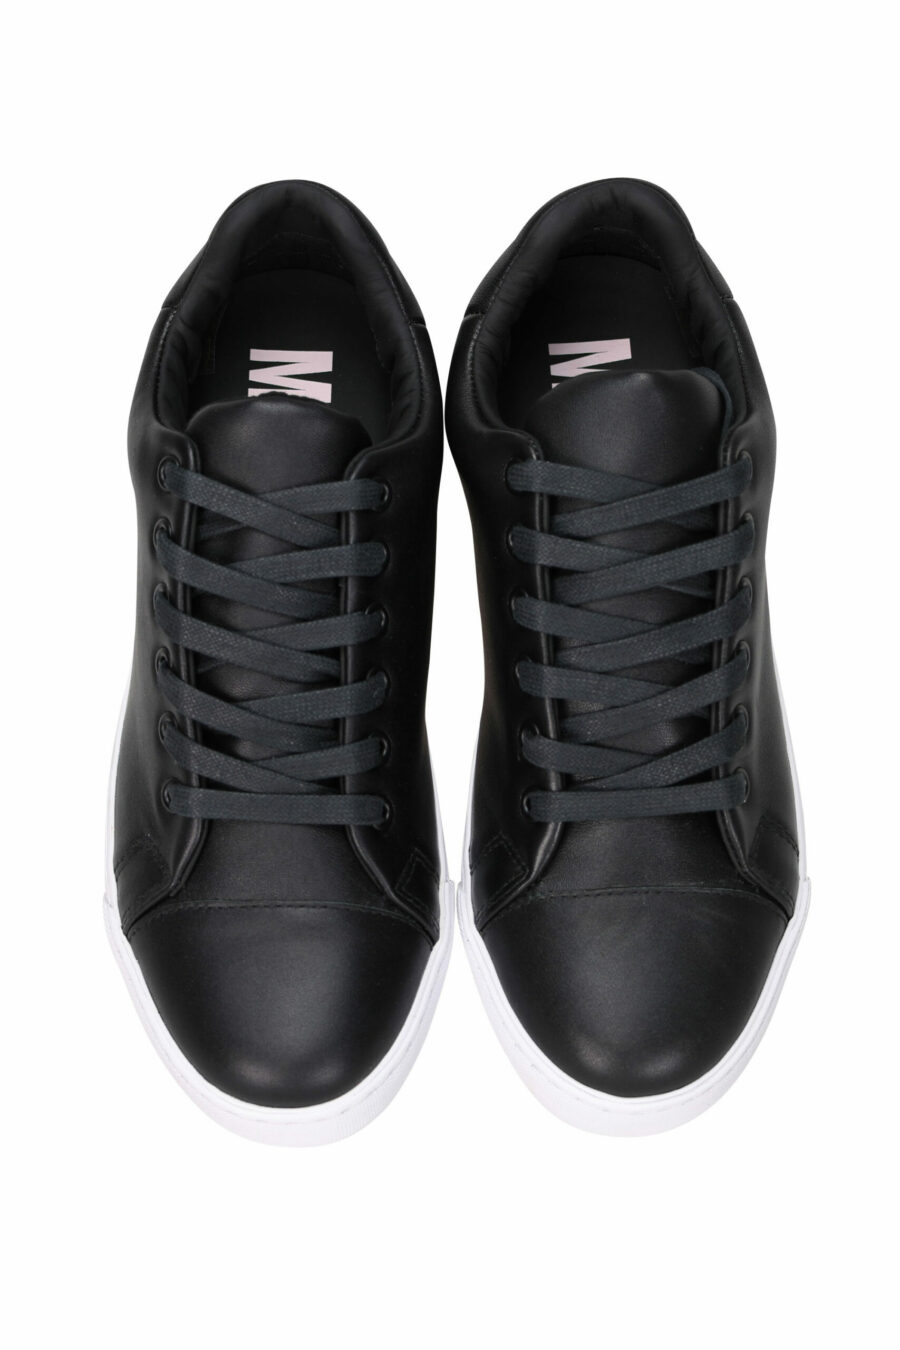 Zapatillas negras "vulc25" con suela blanca y logo en goma detrás - 8054388585958 3 scaled